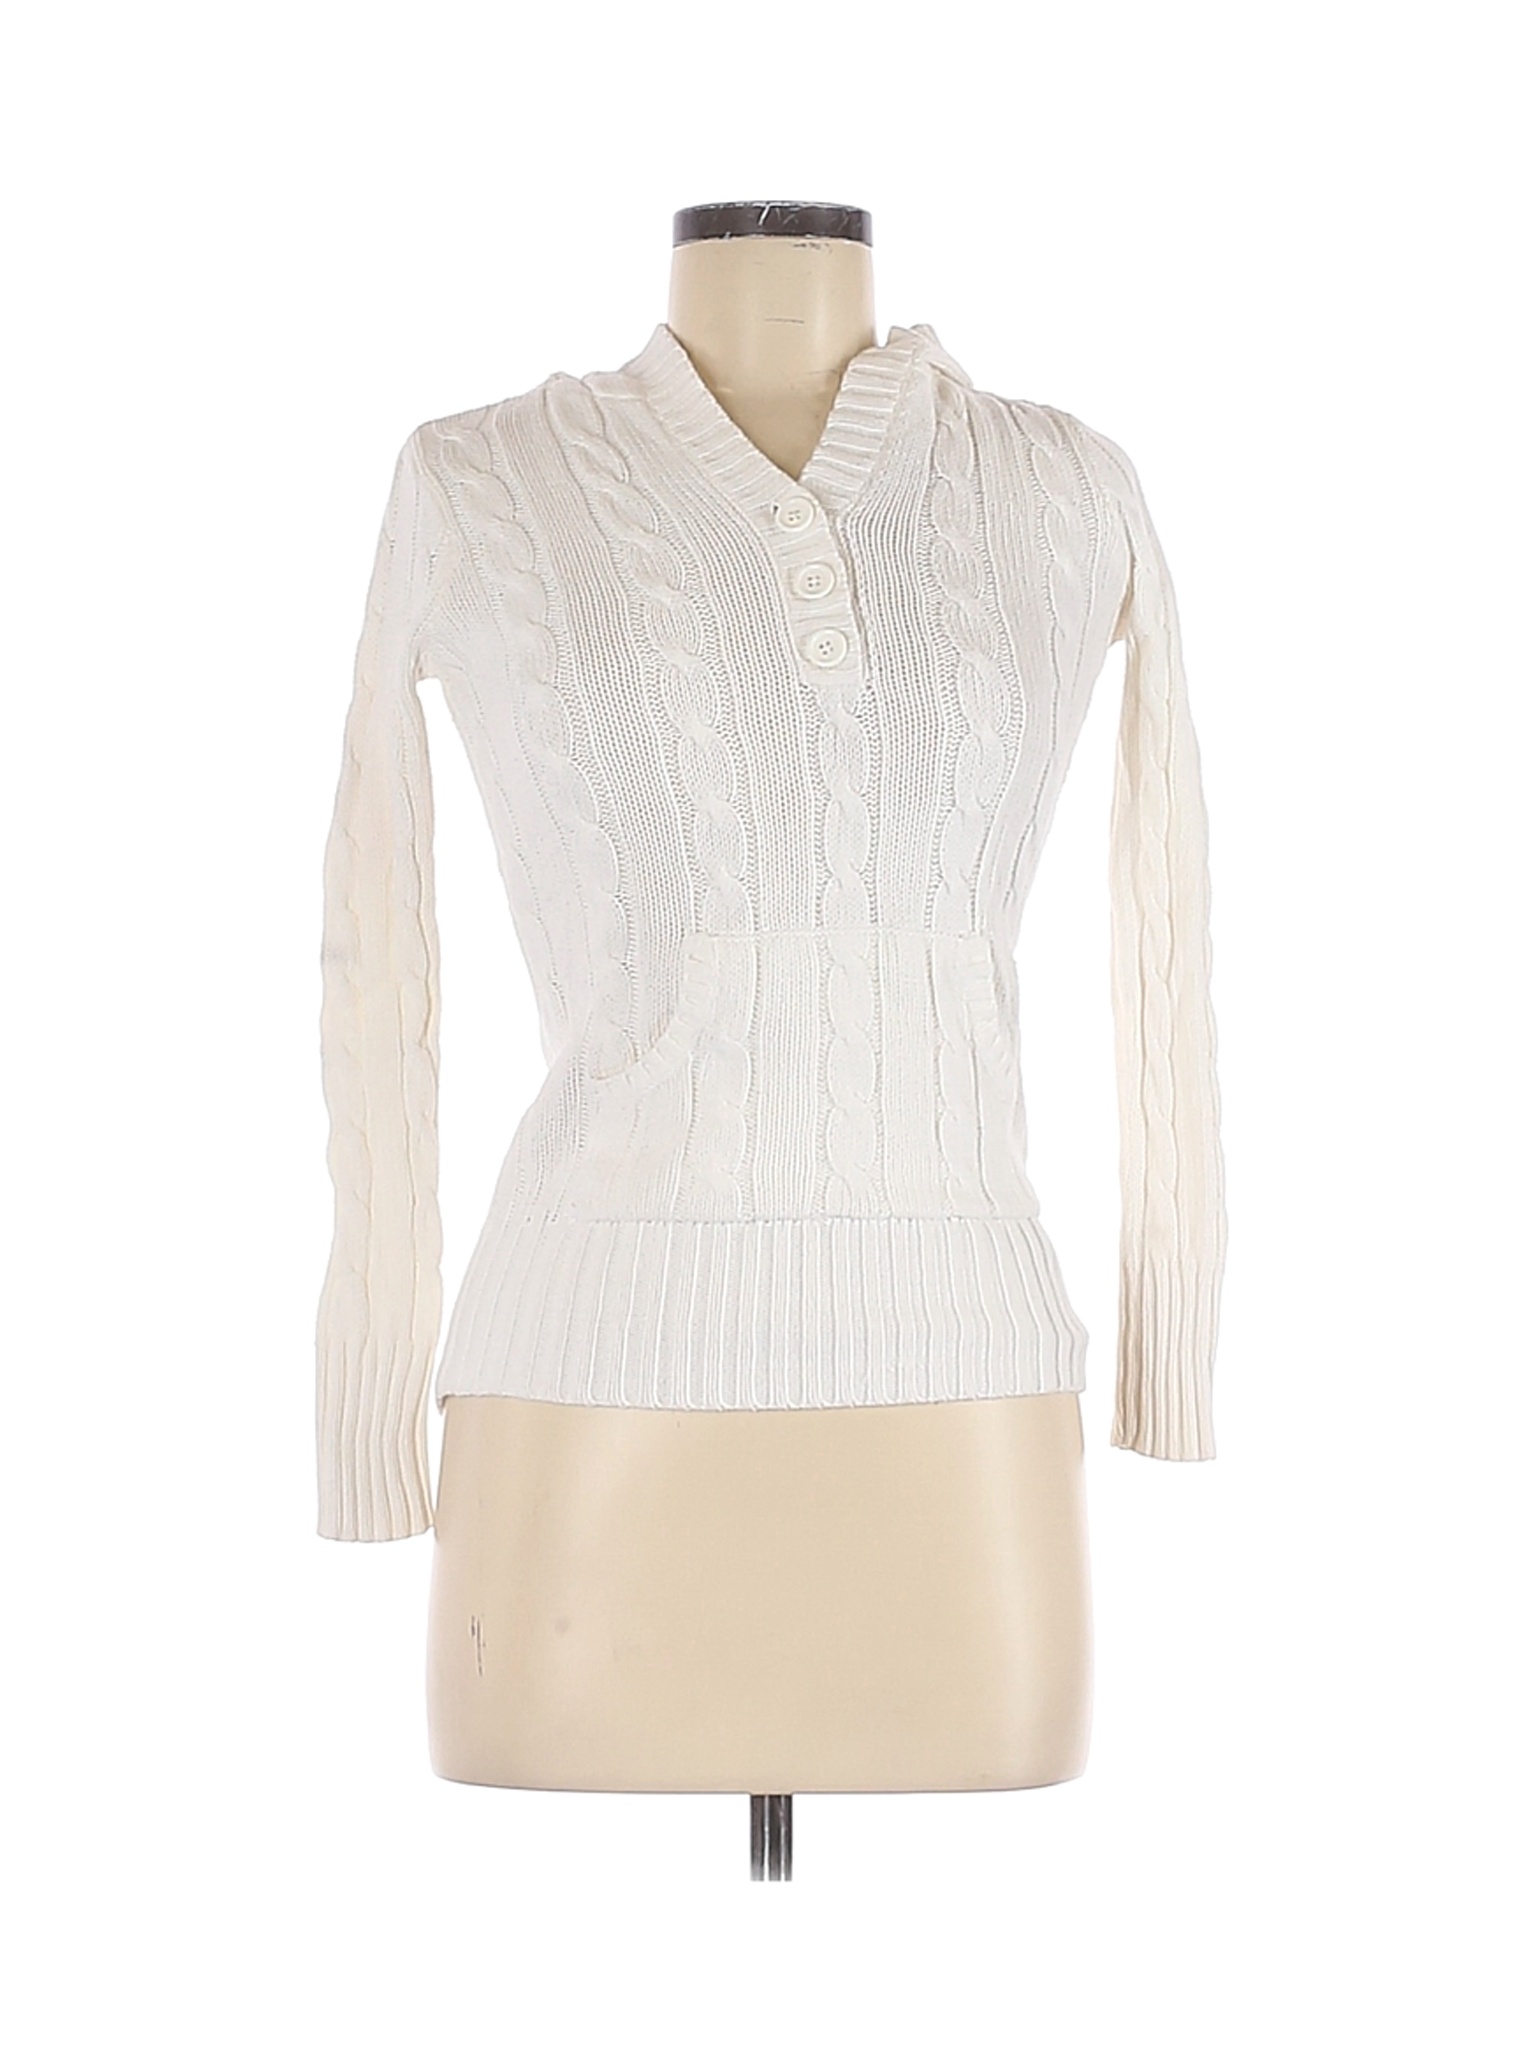 Ellemenno Women White Pullover Sweater M | eBay